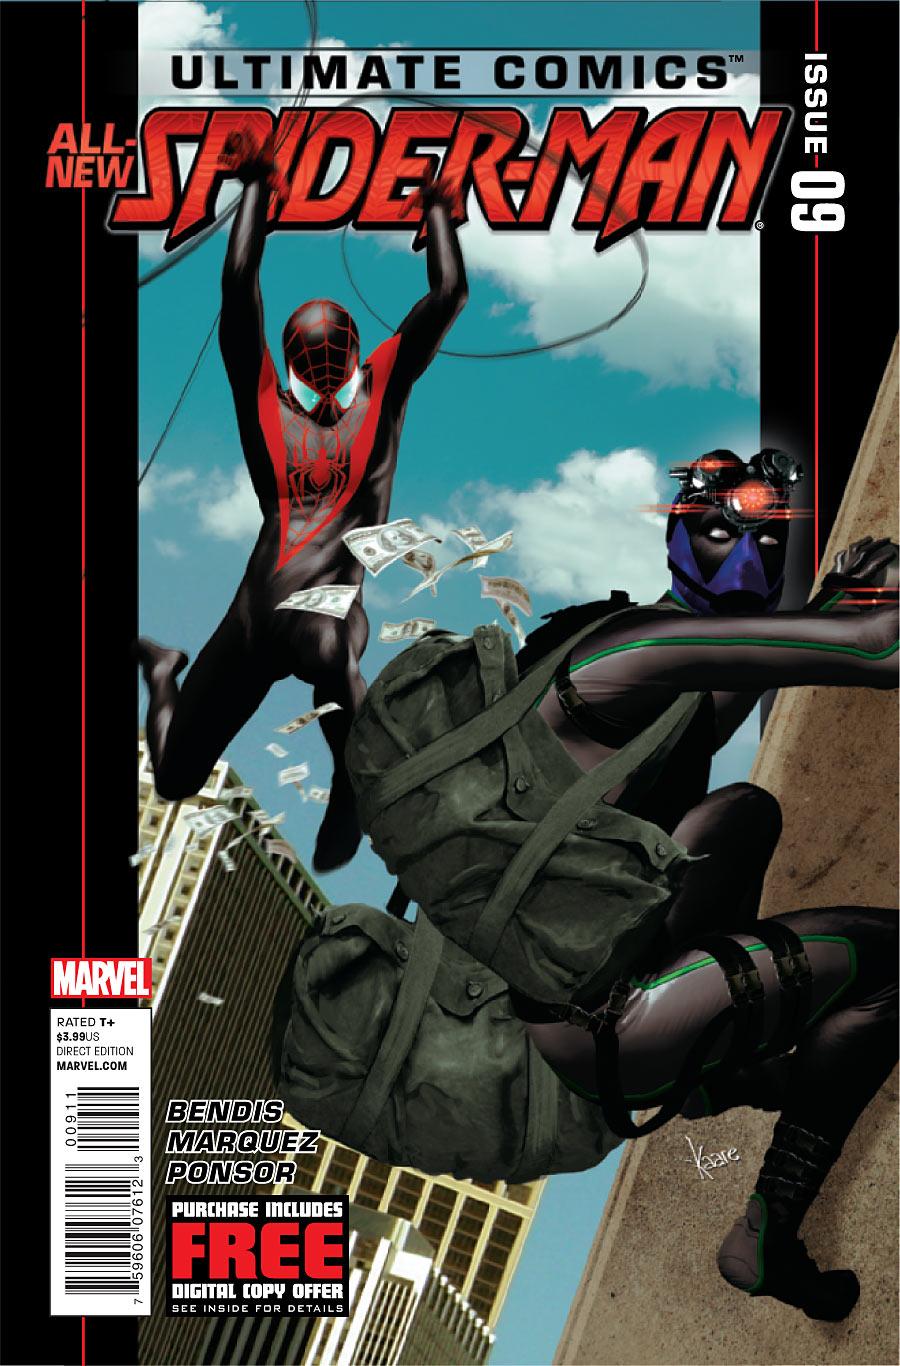 Ultimate Comics Spider-Man Vol. 2 #9